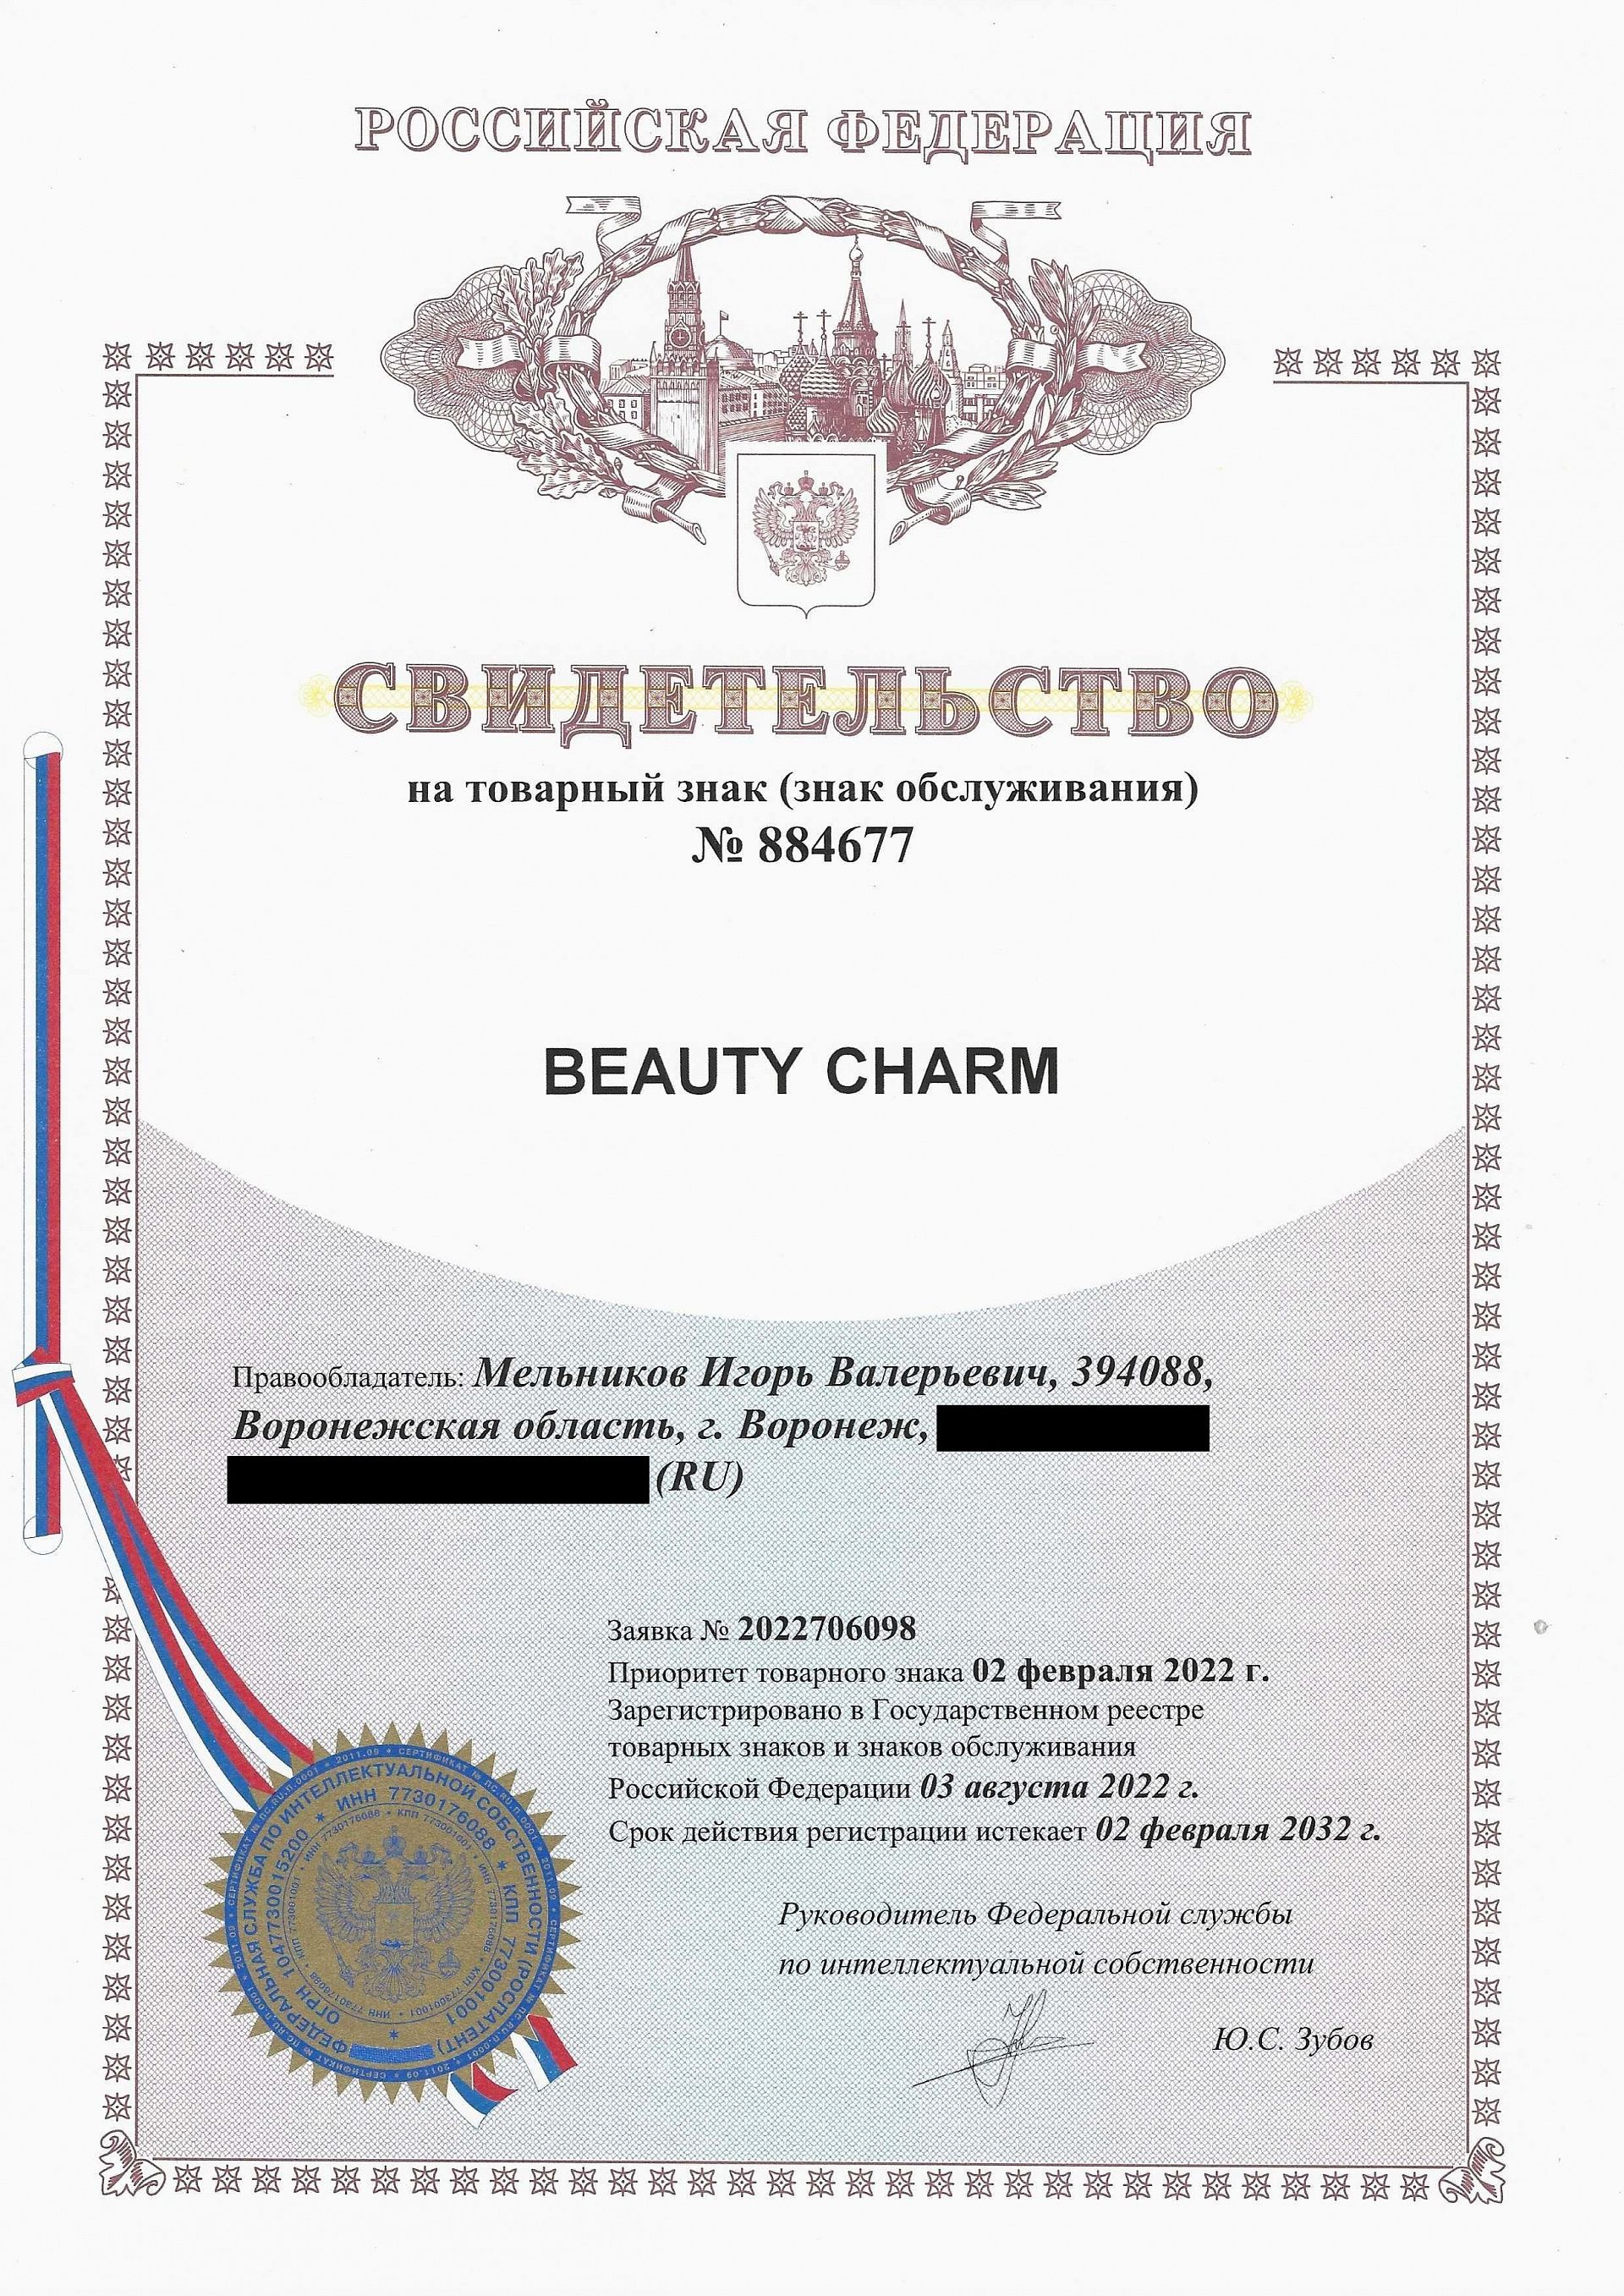 Товарный знак № 884677 – Beauty Charm